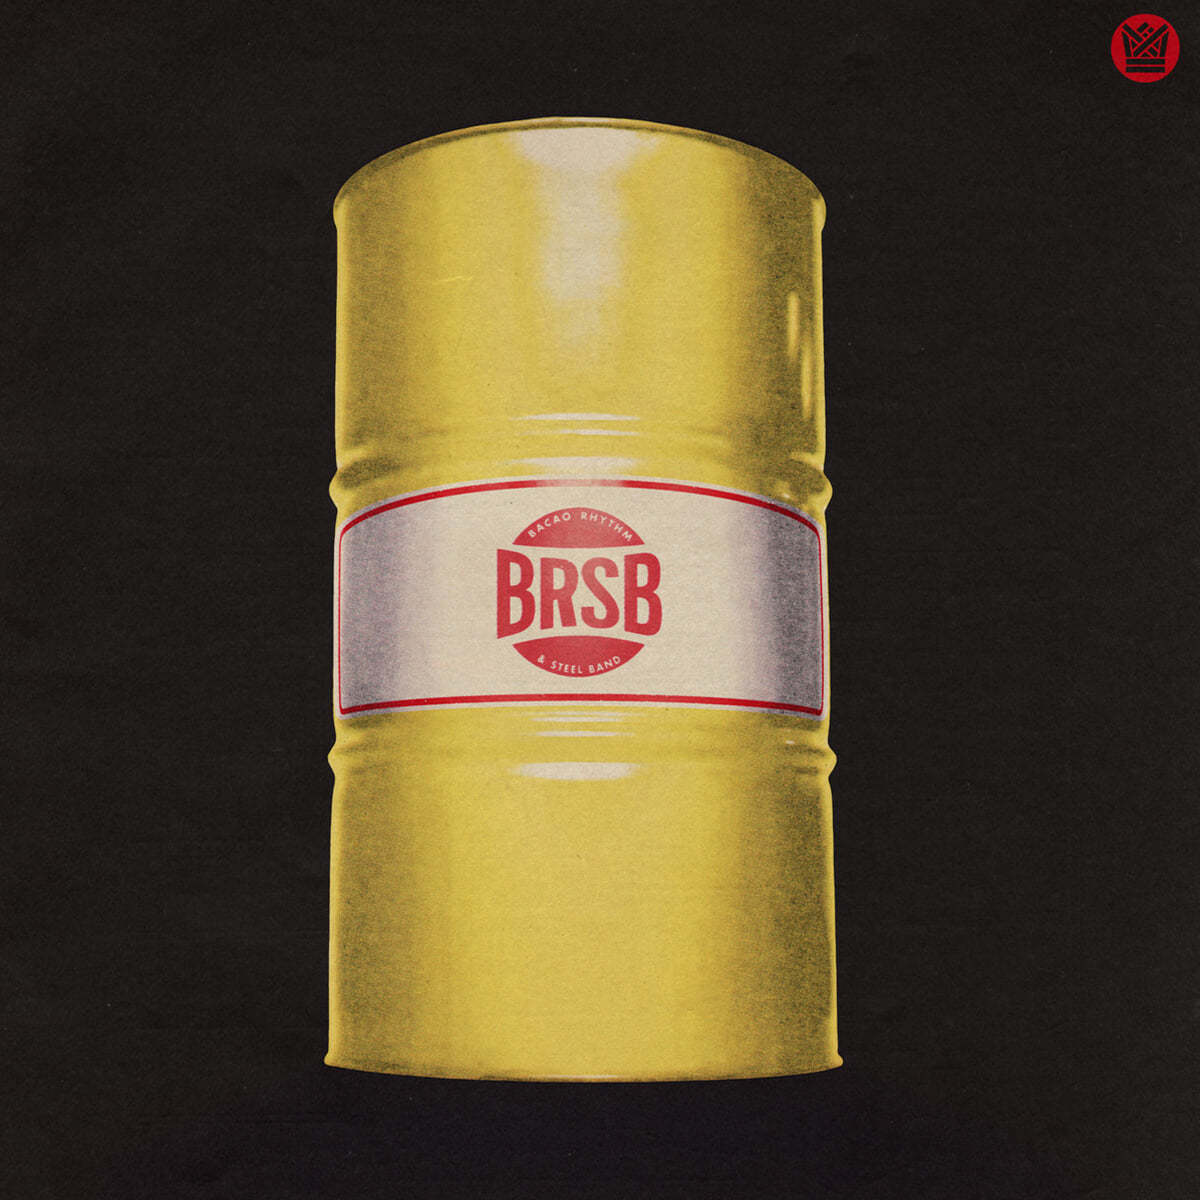 Bacao Rhythm &amp; Steel Band (바카오 리듬 앤 스틸 밴드) - BRSB